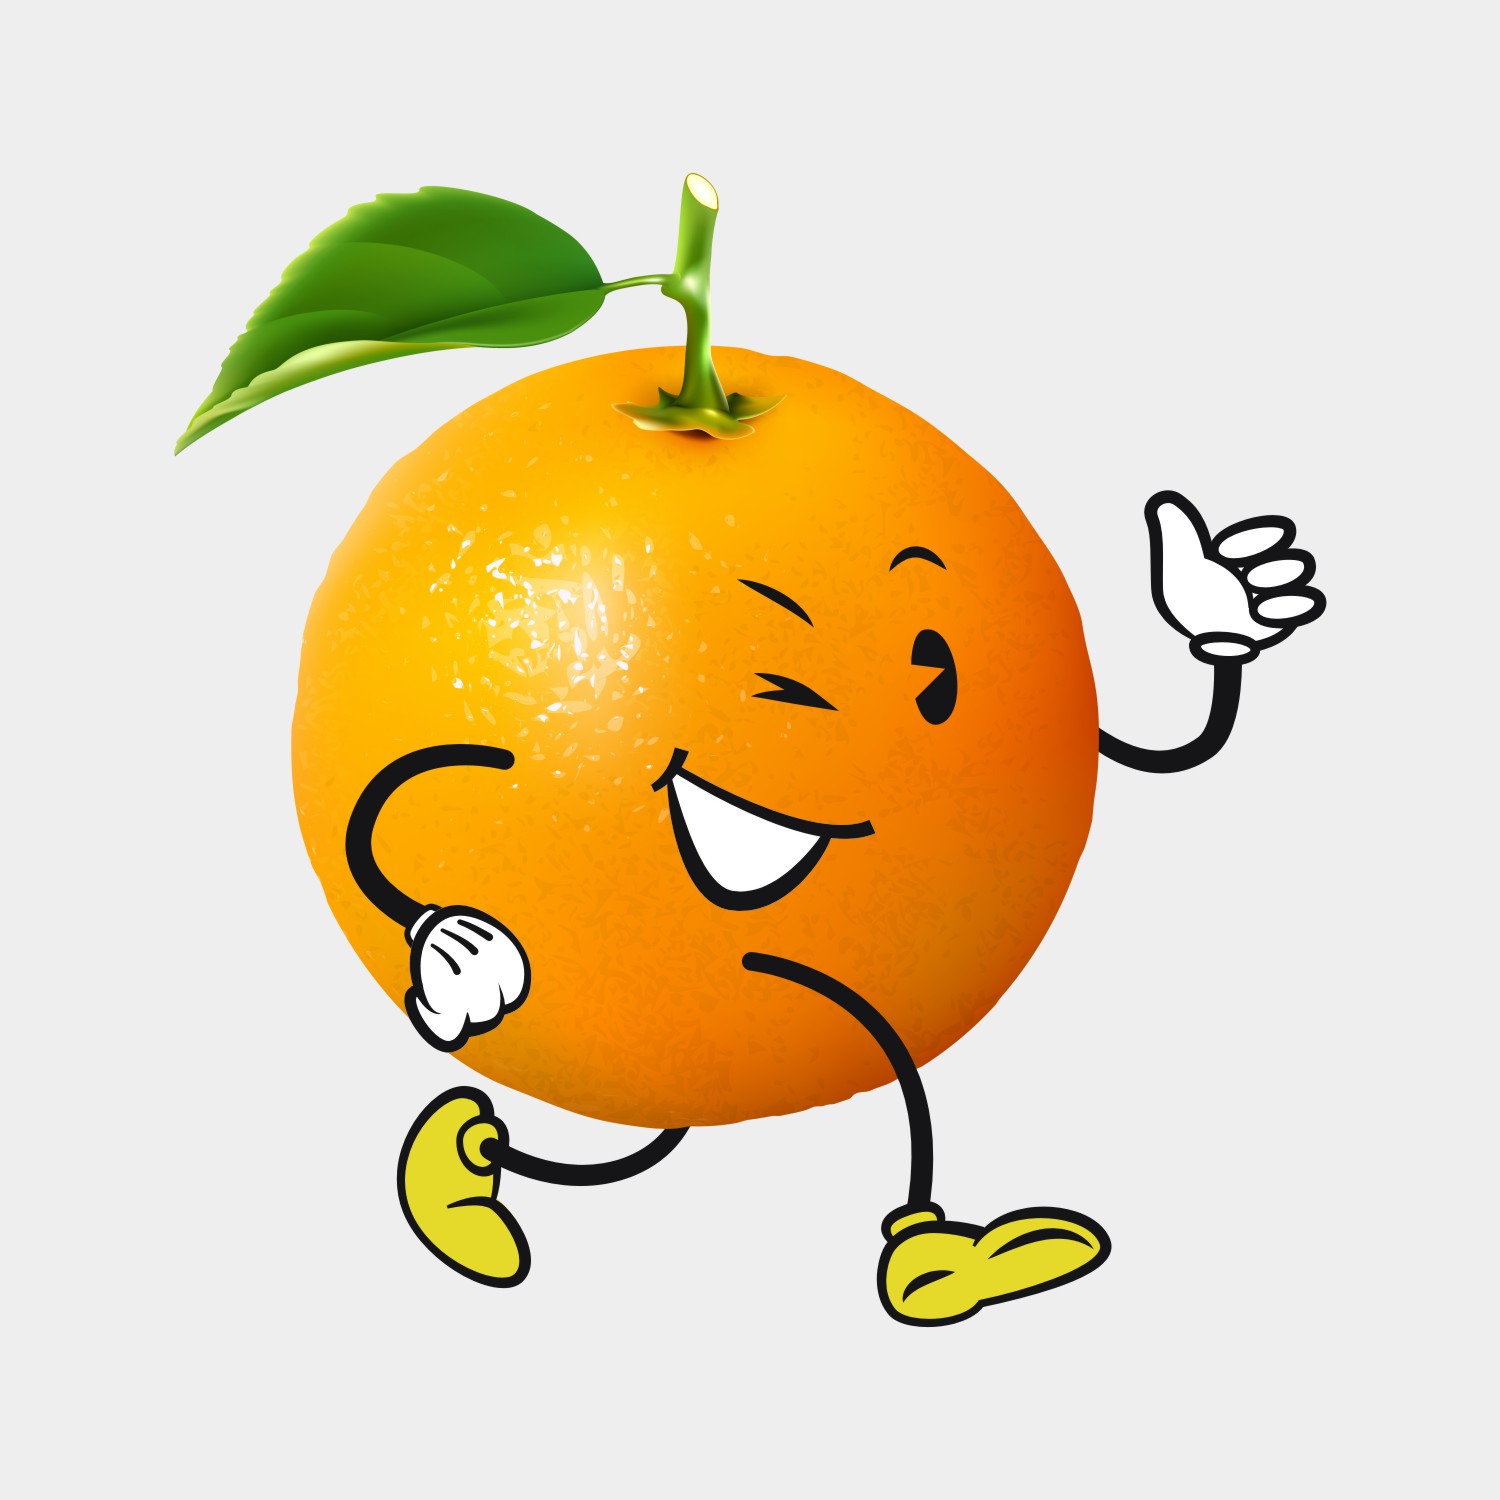 橙子微信头像水果图片